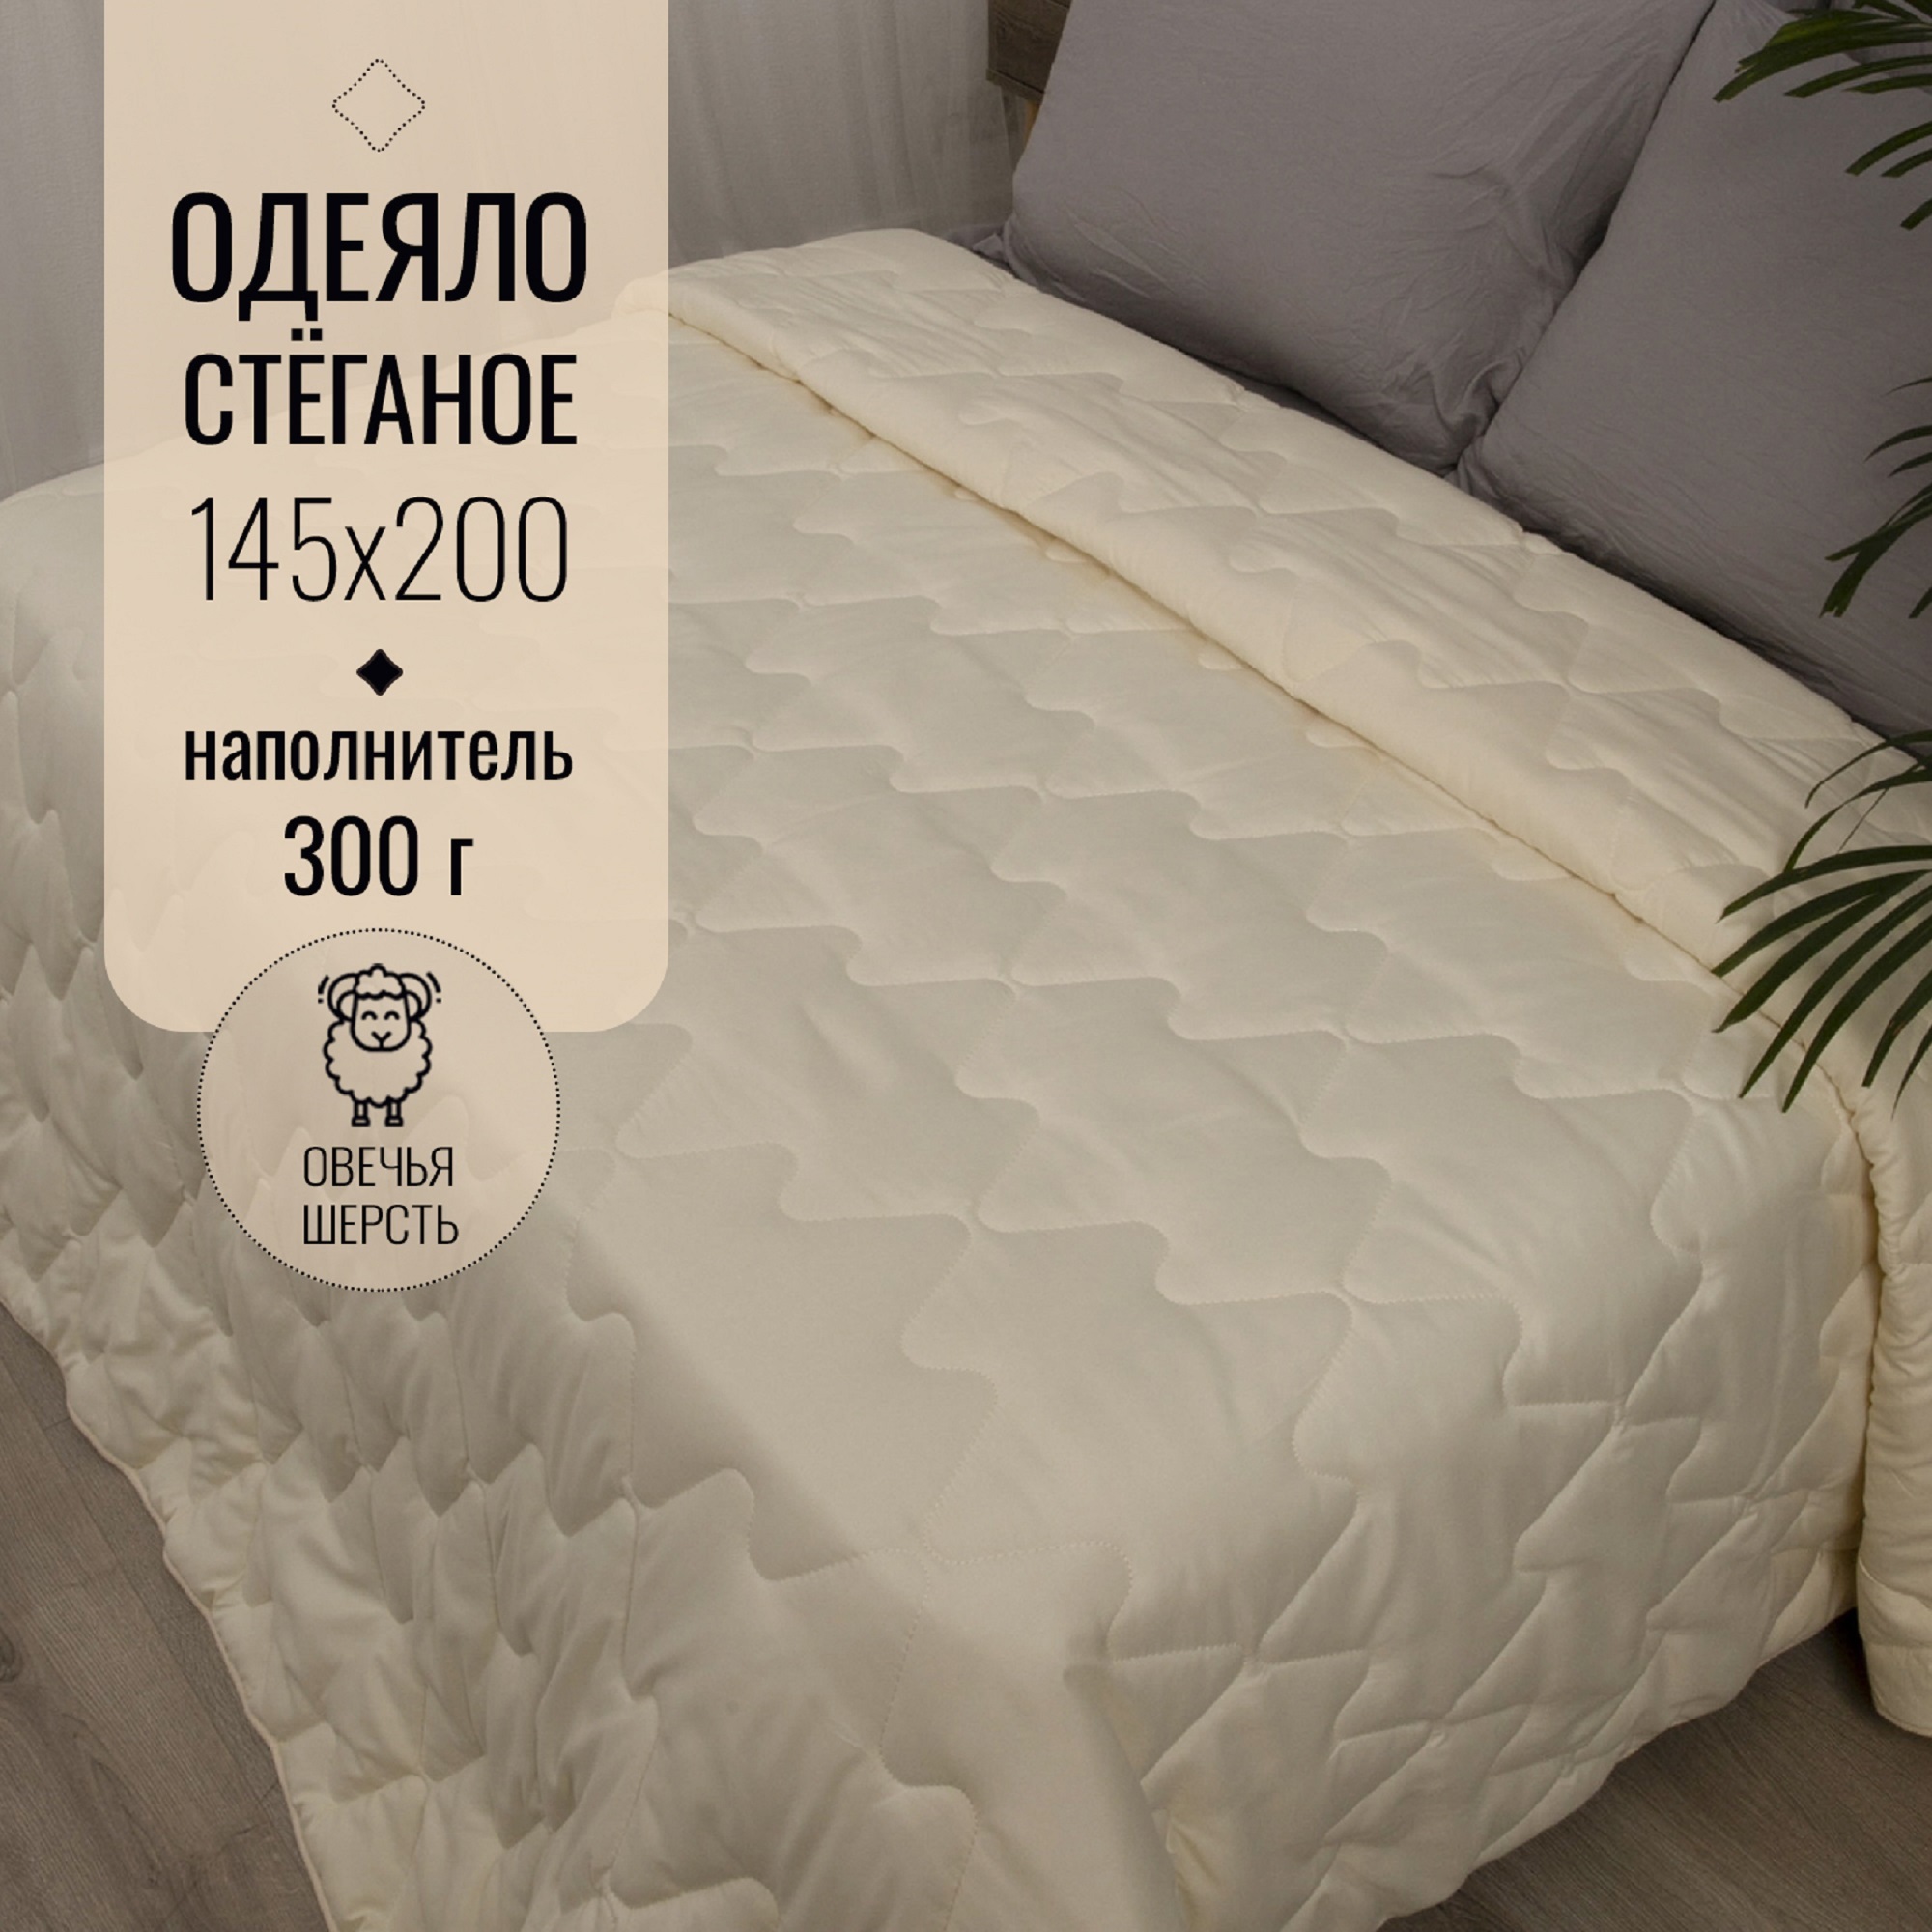 Купить детское одеяло из Иваново от р. в интернет-магазине